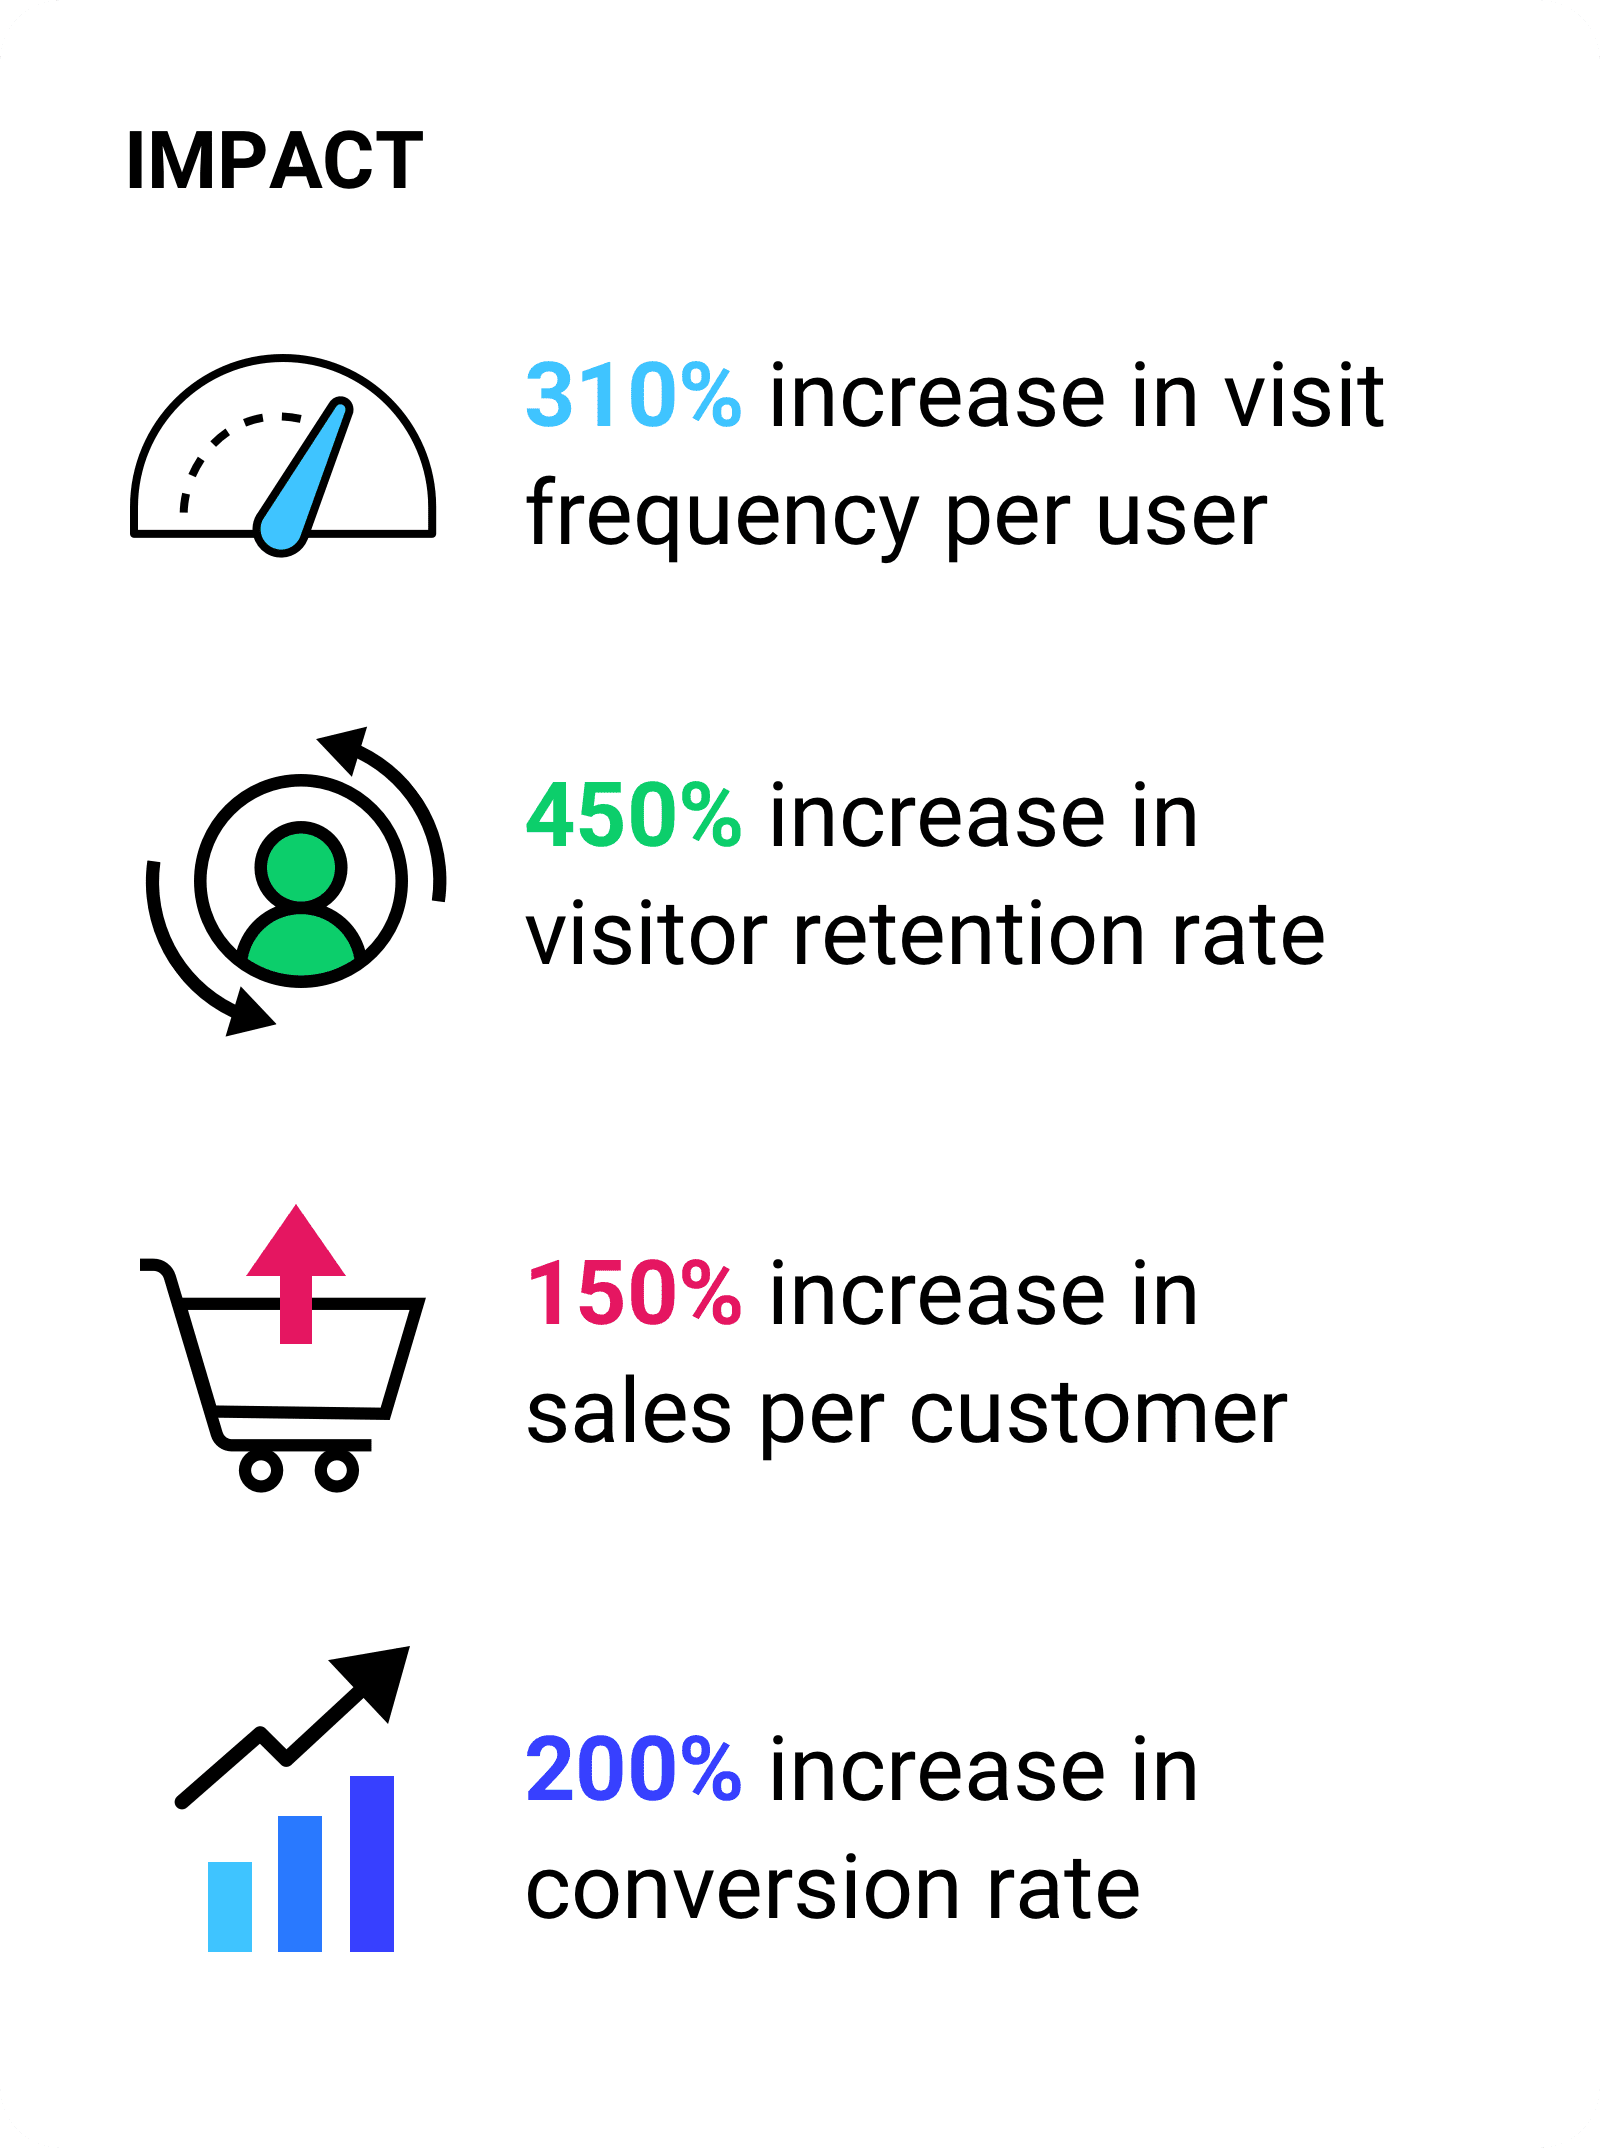 Kullanıcı başına ziyaret sıklığında% 310 artış.  Ziyaretçileri elde tutma oranında% 450 artış. Müşteri başına satışlarda% 150 artış.Dönüşüm oranında% 200 artış.